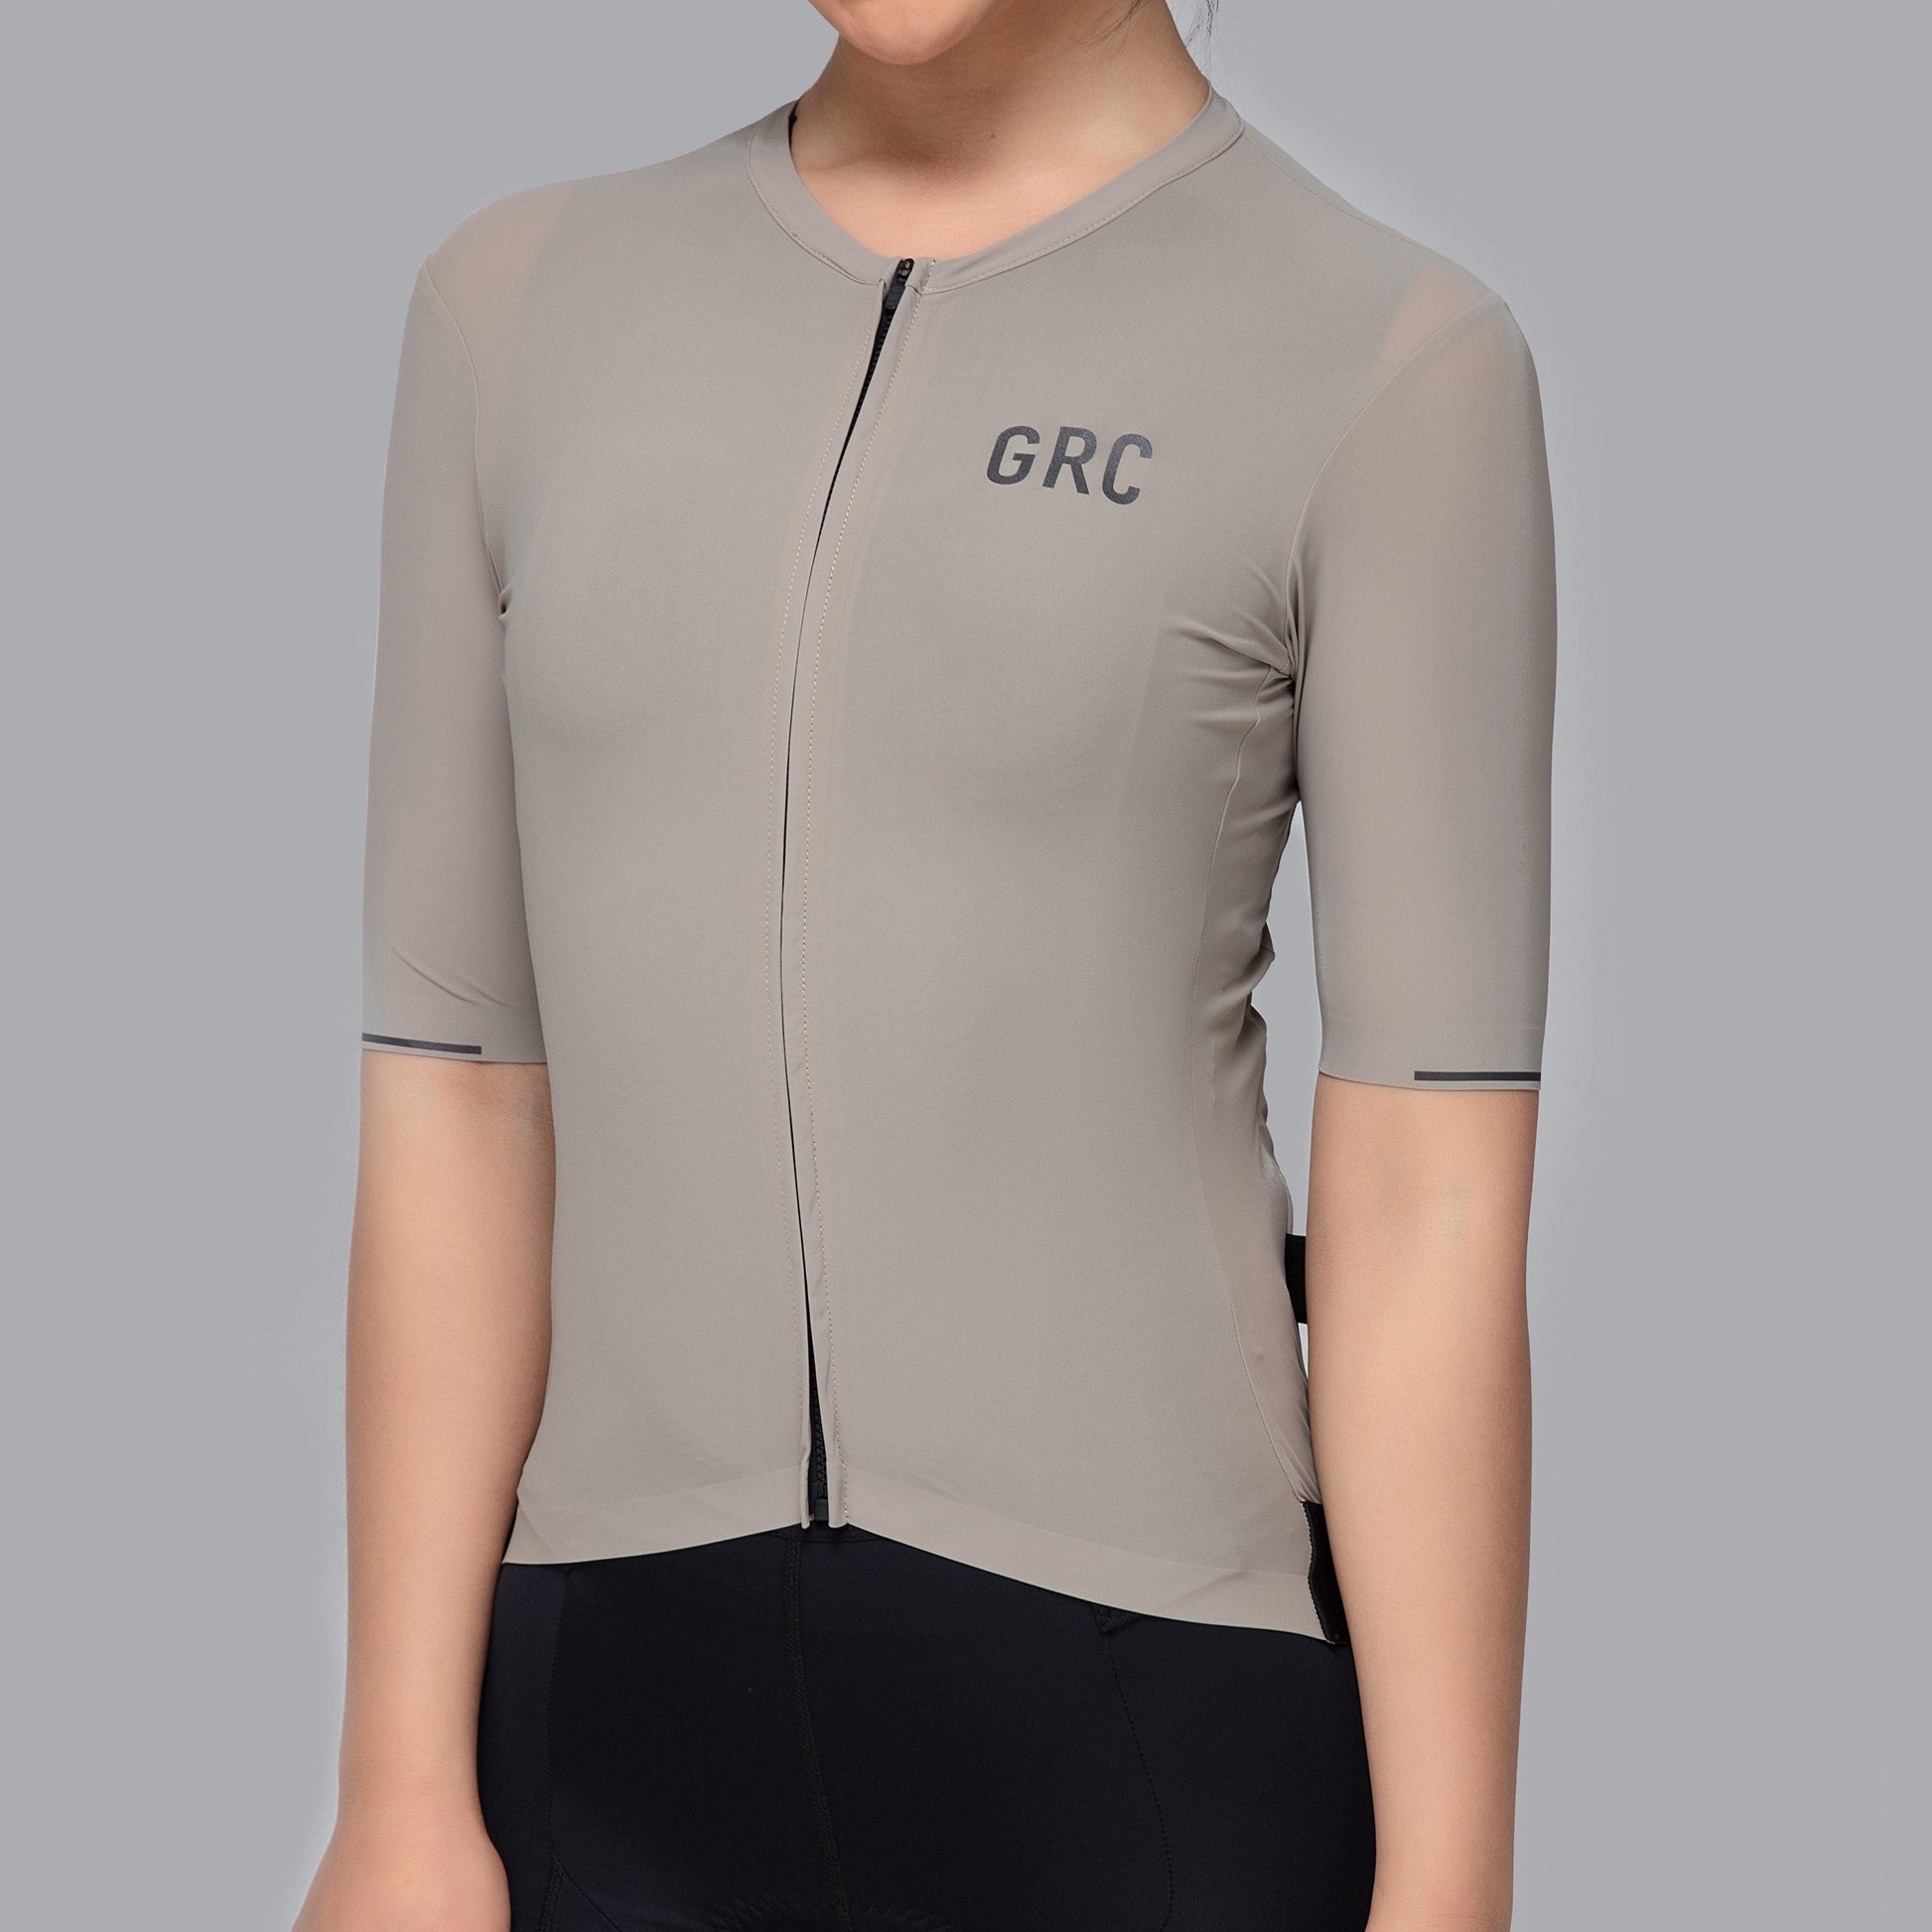 Women's Solid Color Tech Jersey - GRC Unique Cycling Apparel